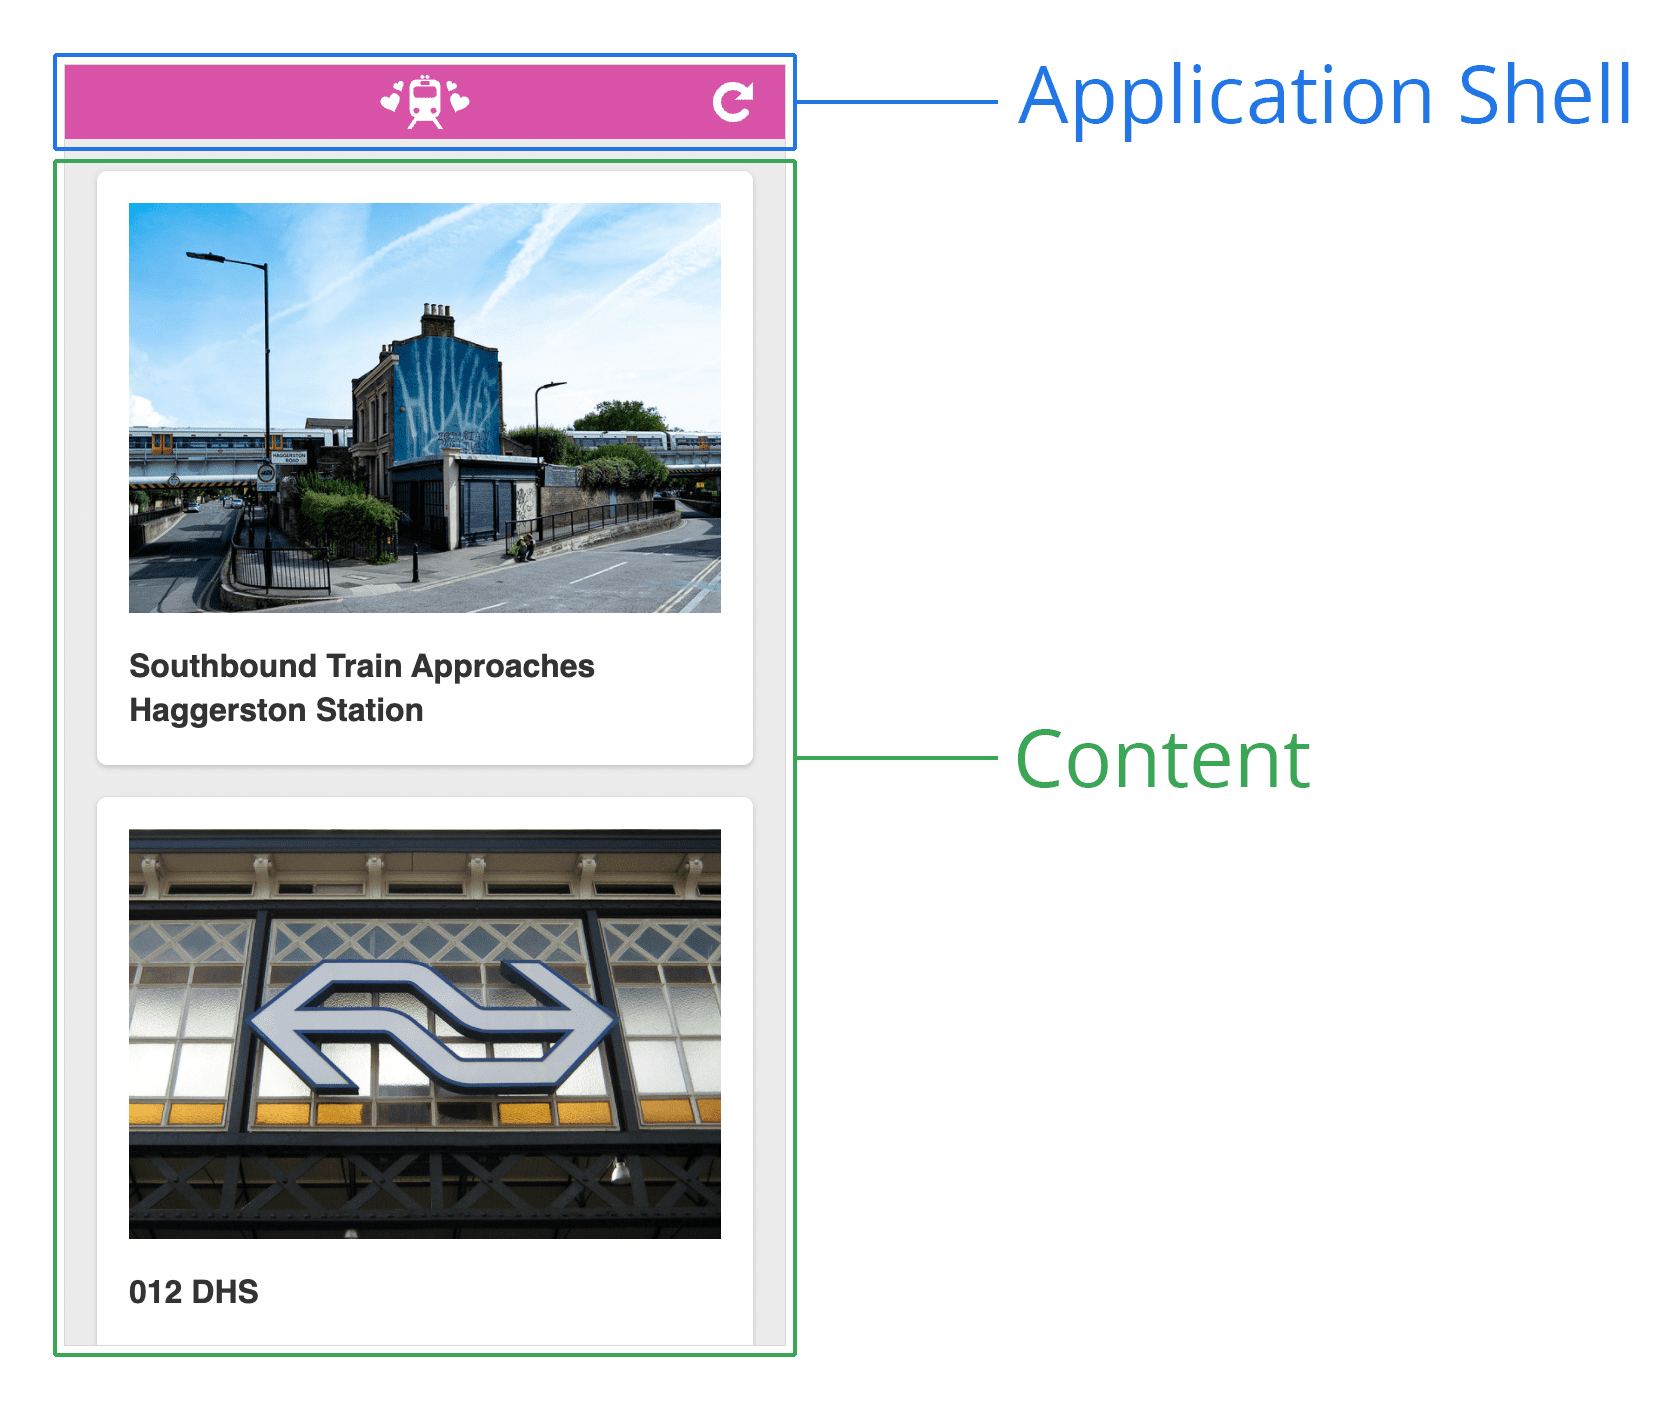 Diagrama de una shell de aplicación. Es una captura de pantalla de una página web con un encabezado en la parte superior y un área de contenido en la parte inferior. El encabezado tiene la etiqueta &quot;Application Shell&quot;, mientras que la parte inferior está etiquetada como &quot;Content&quot;.